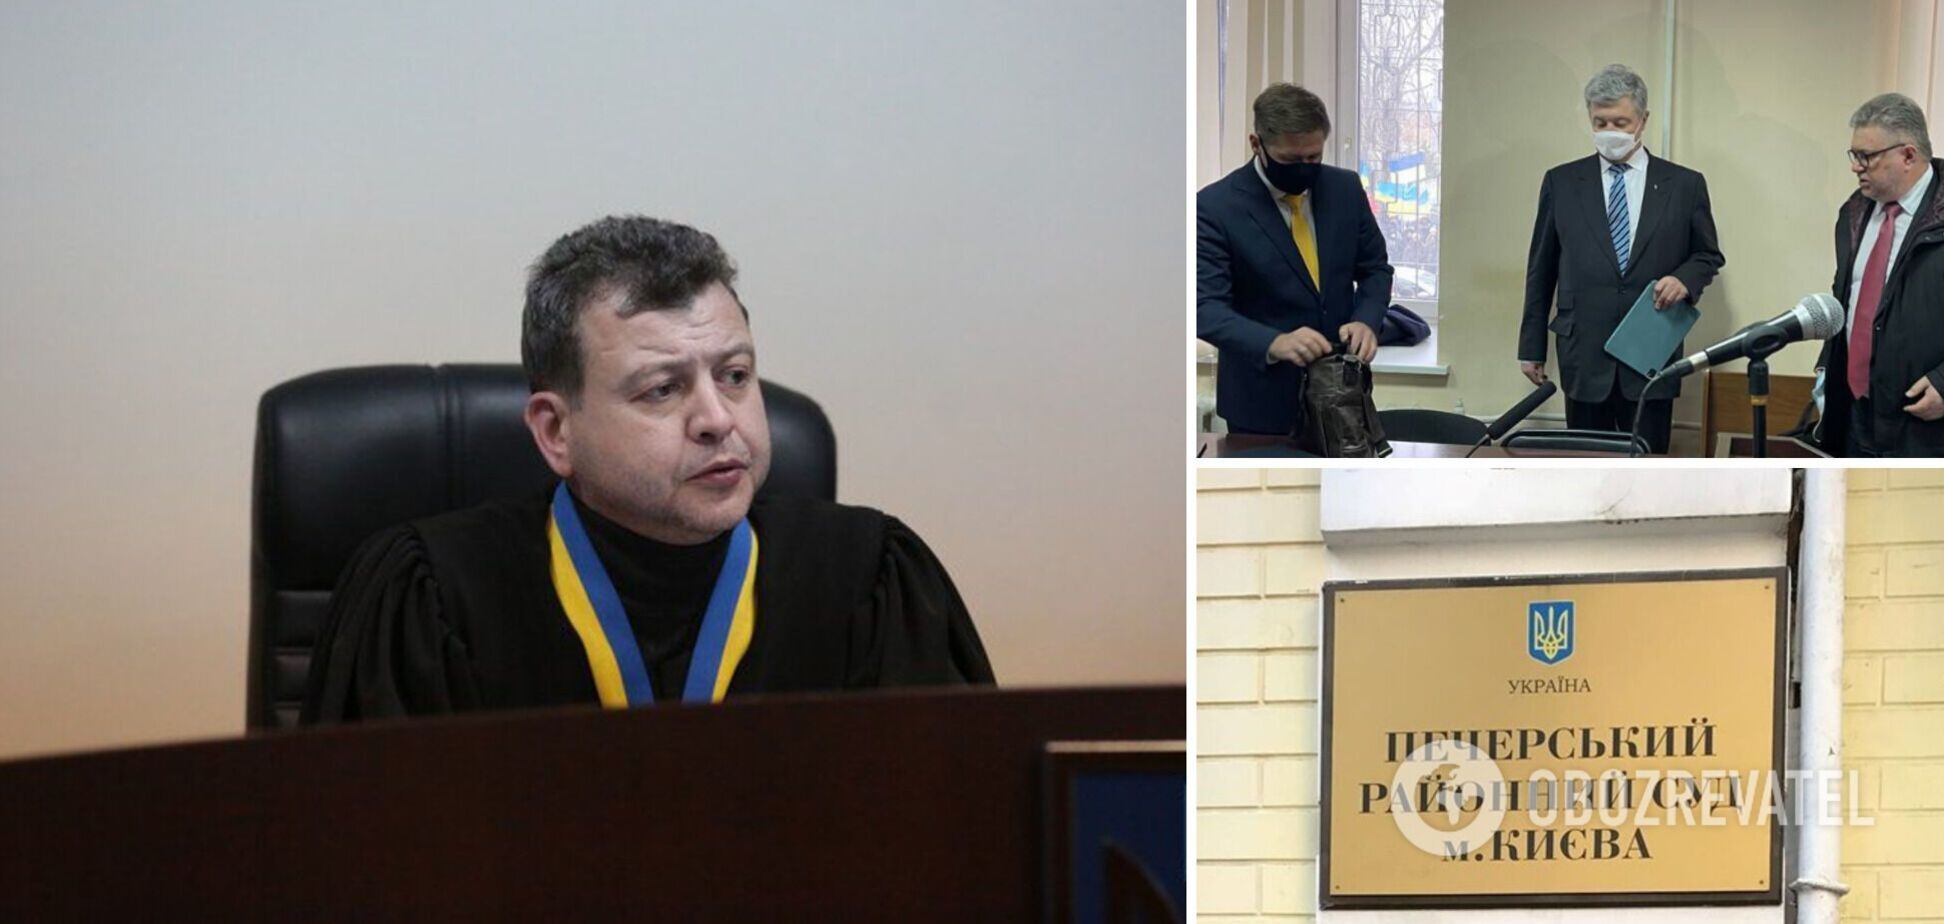 Меру пресечения Порошенко будет избирать судья Алексей Соколов